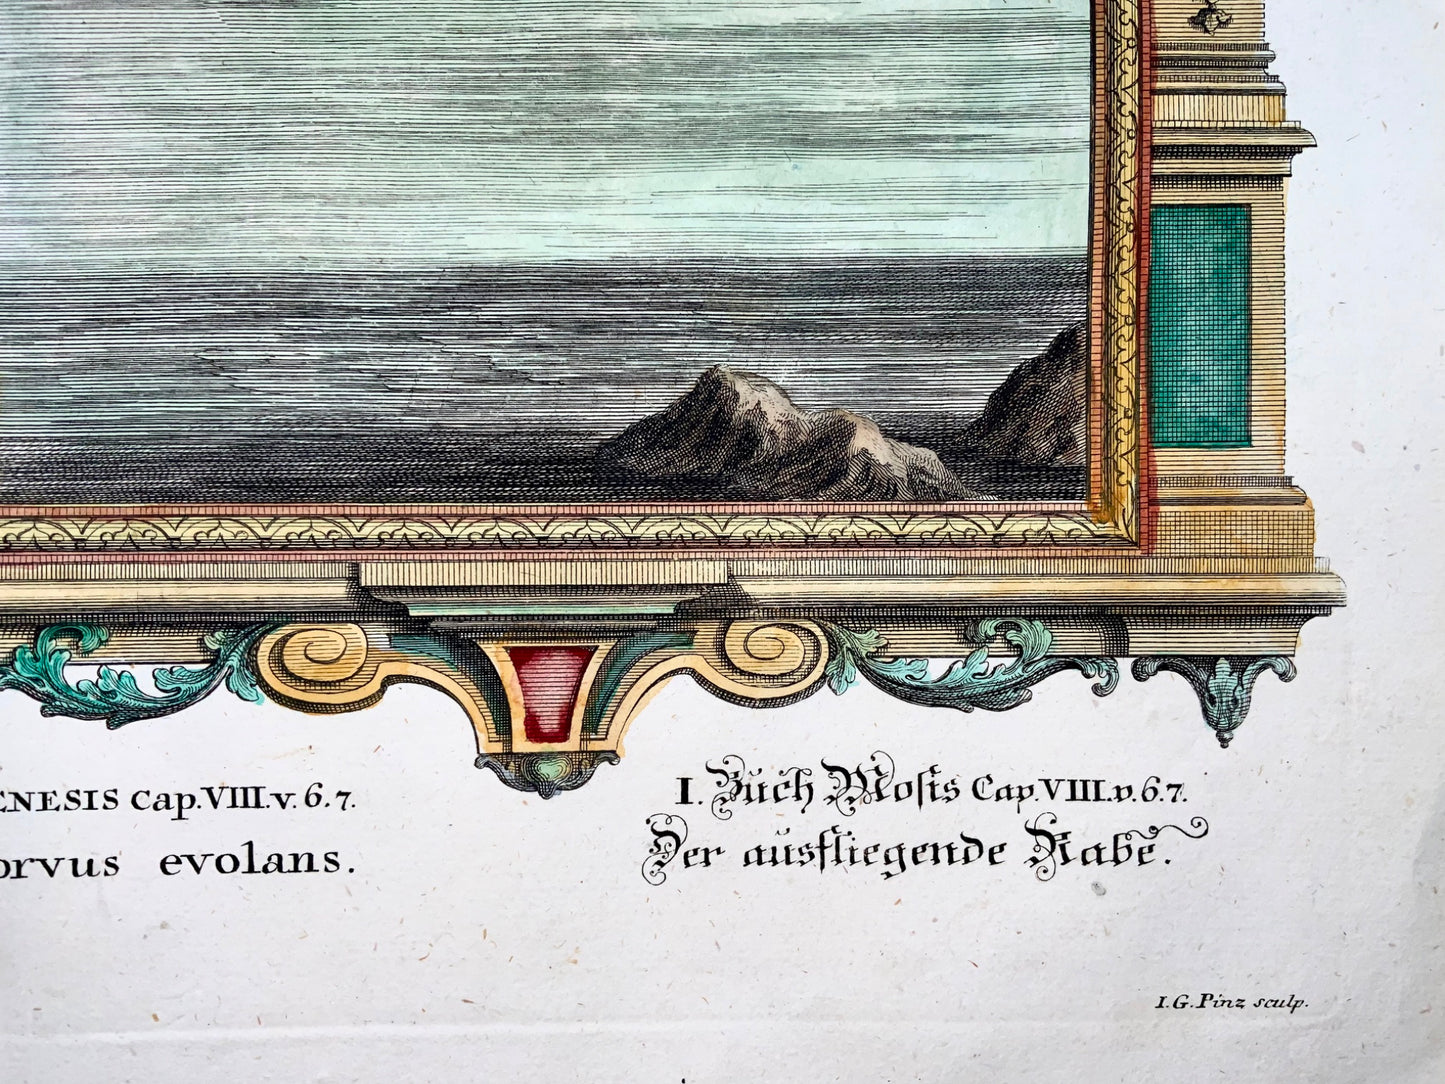 1735 Arca di Noè, corvo, JJ Scheuchzer, incisione biblica, folio, colorato a mano